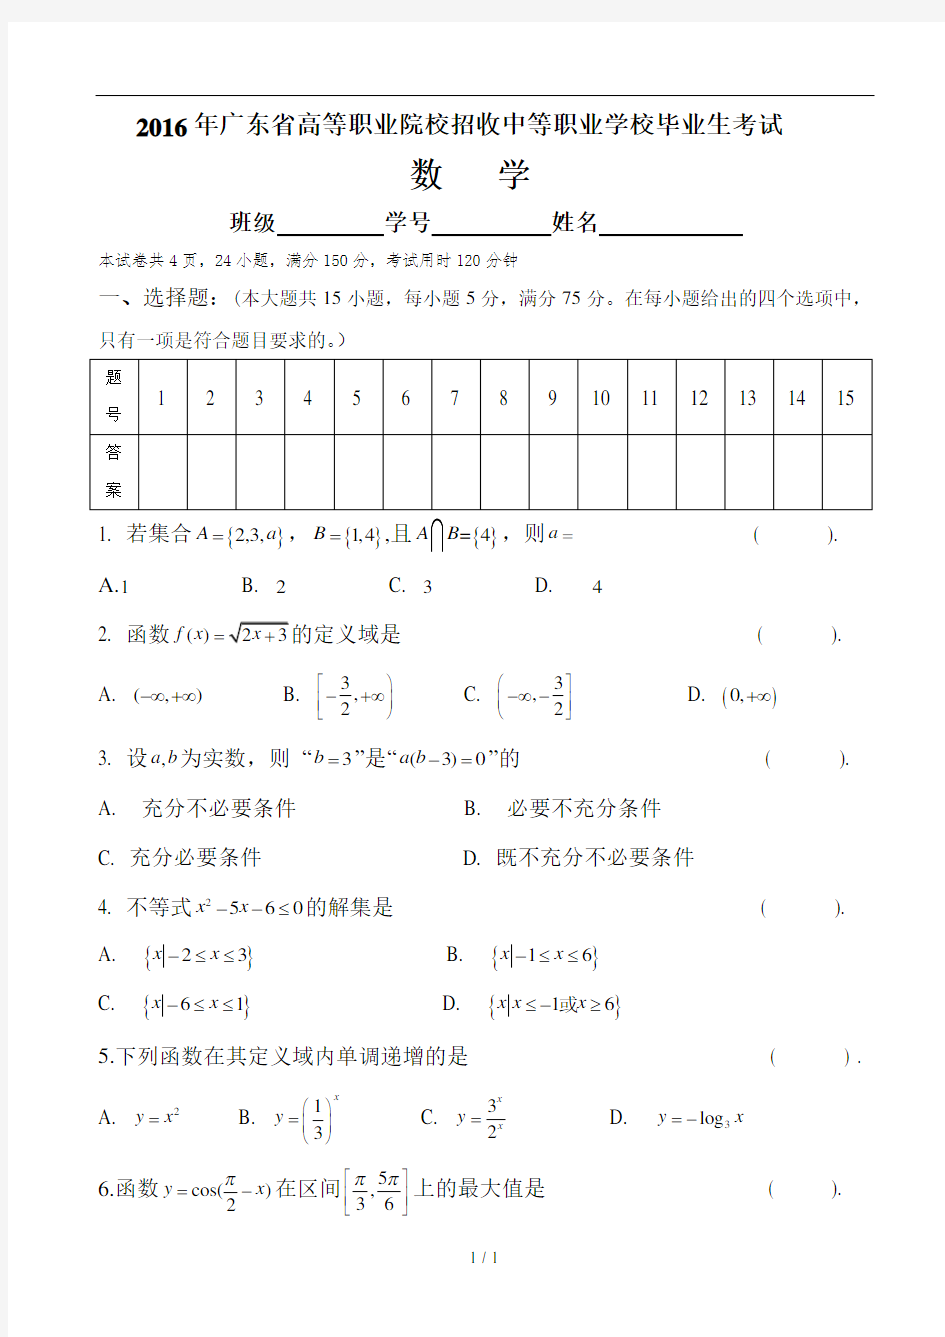 2016年广东省3+证书高职高考数学试卷(真题)和详细答案